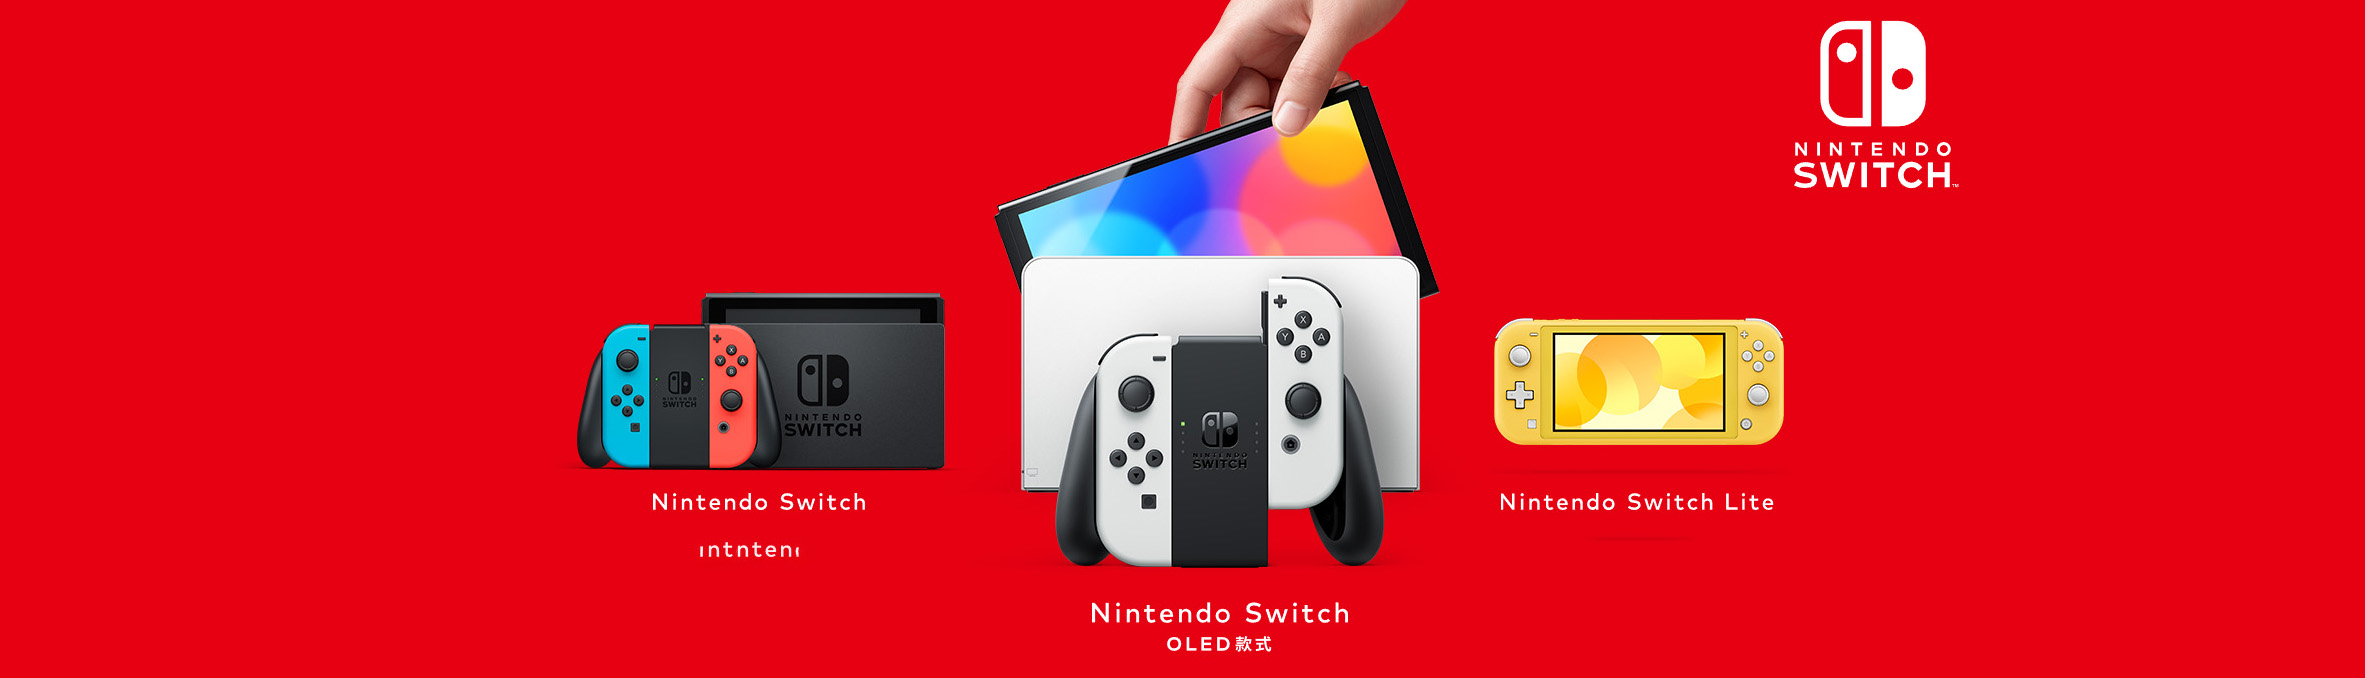 Nintendo Switch小白入坑完全指南-避免踩坑- 哔哩哔哩